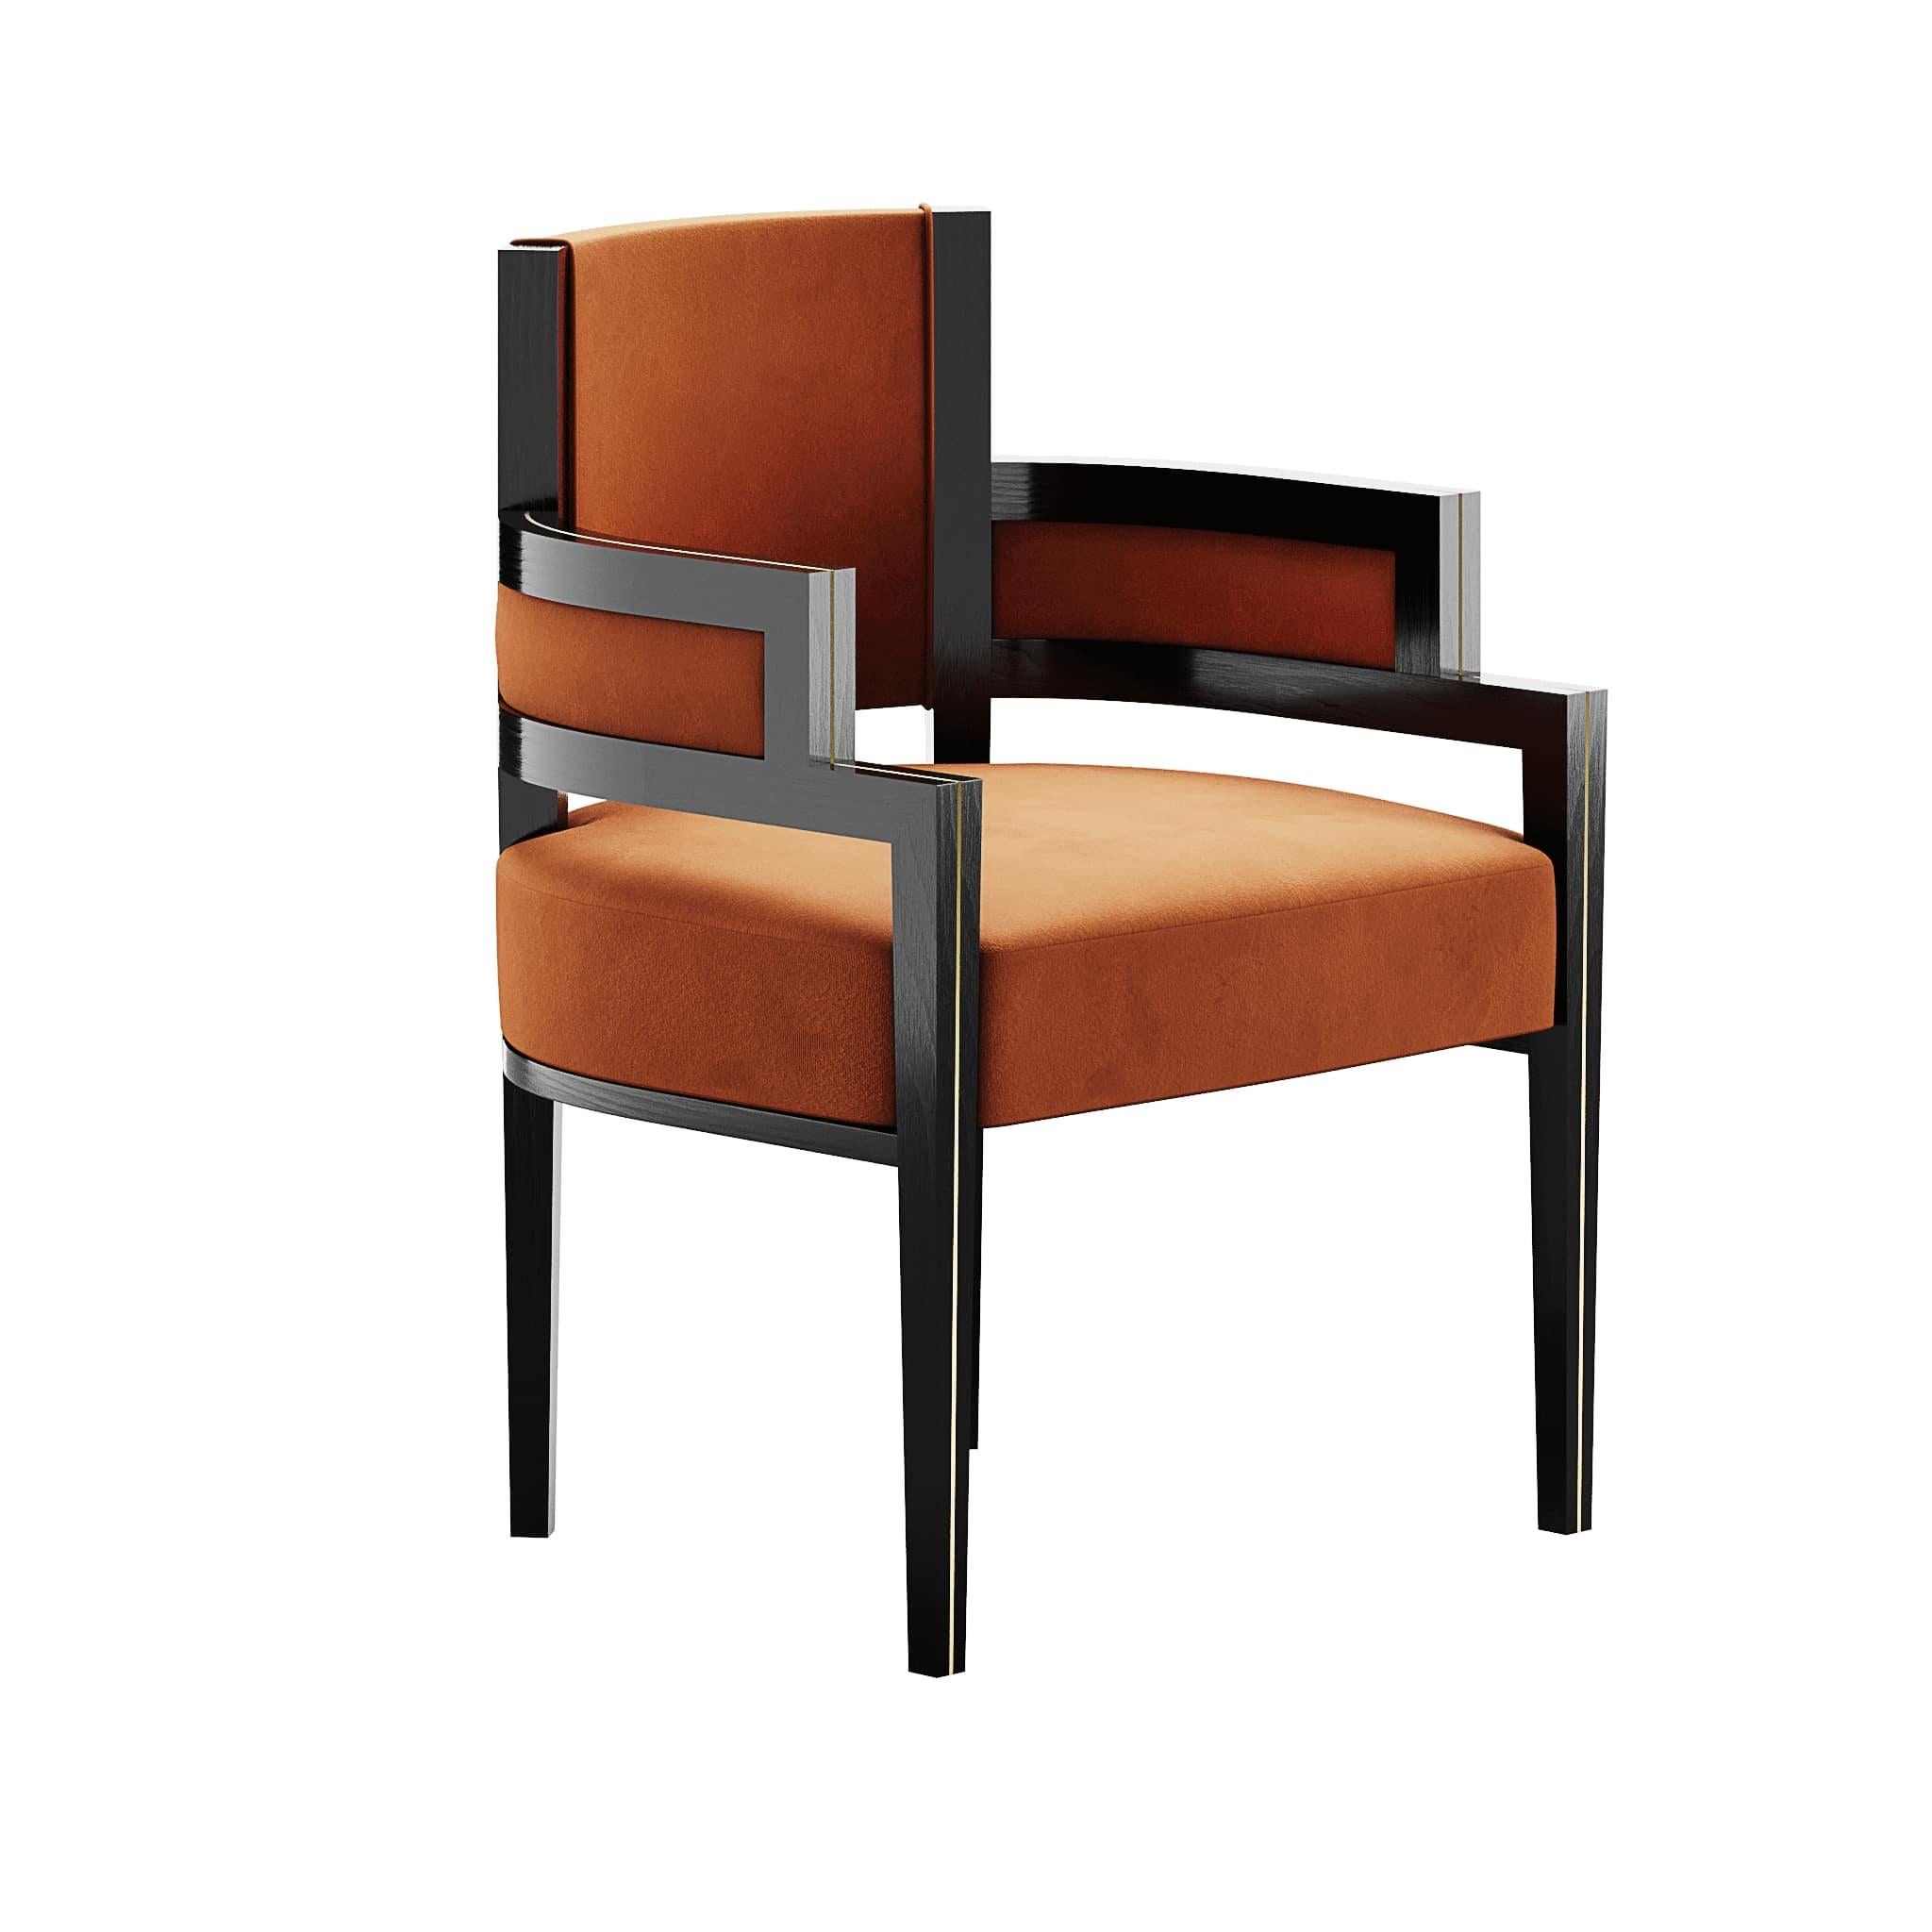 Pina Chair Iron ist ein Esszimmerstuhl im Art-Déco-Stil, dessen Form den besten Komfort für die Gäste bietet - gepolstert mit warmem orangefarbenem Samt und einer modernen Holzstruktur. Perfekt für moderne Esszimmerprojekte, die eine